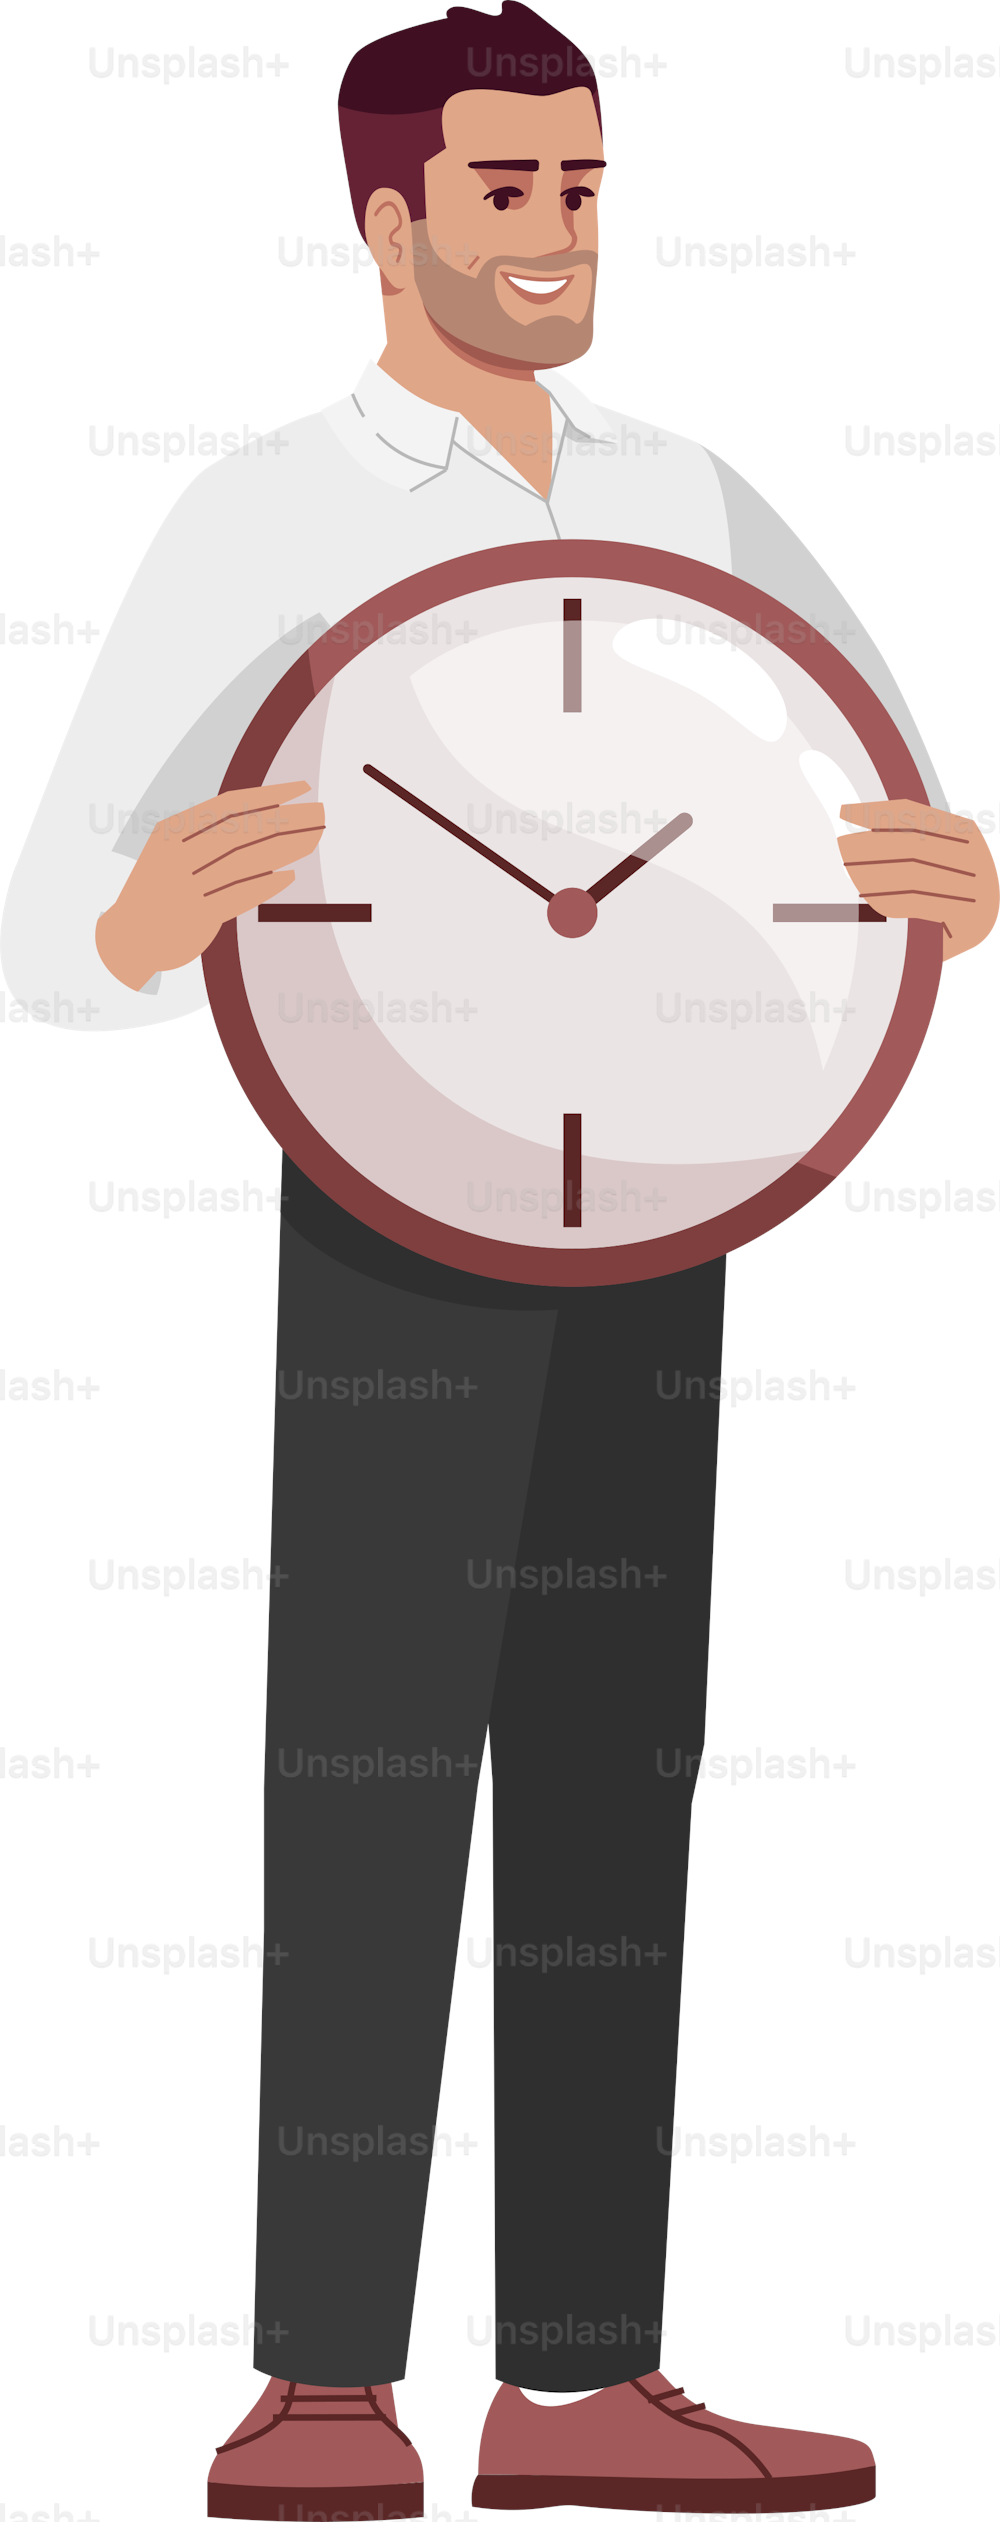 労働者の時間管理スキルセミフラットRGBカラーベクターイラスト。白い背景に時計を持つ従業員の分離型漫画のキャラクター。期限を守る、自己効力感のコンセプト